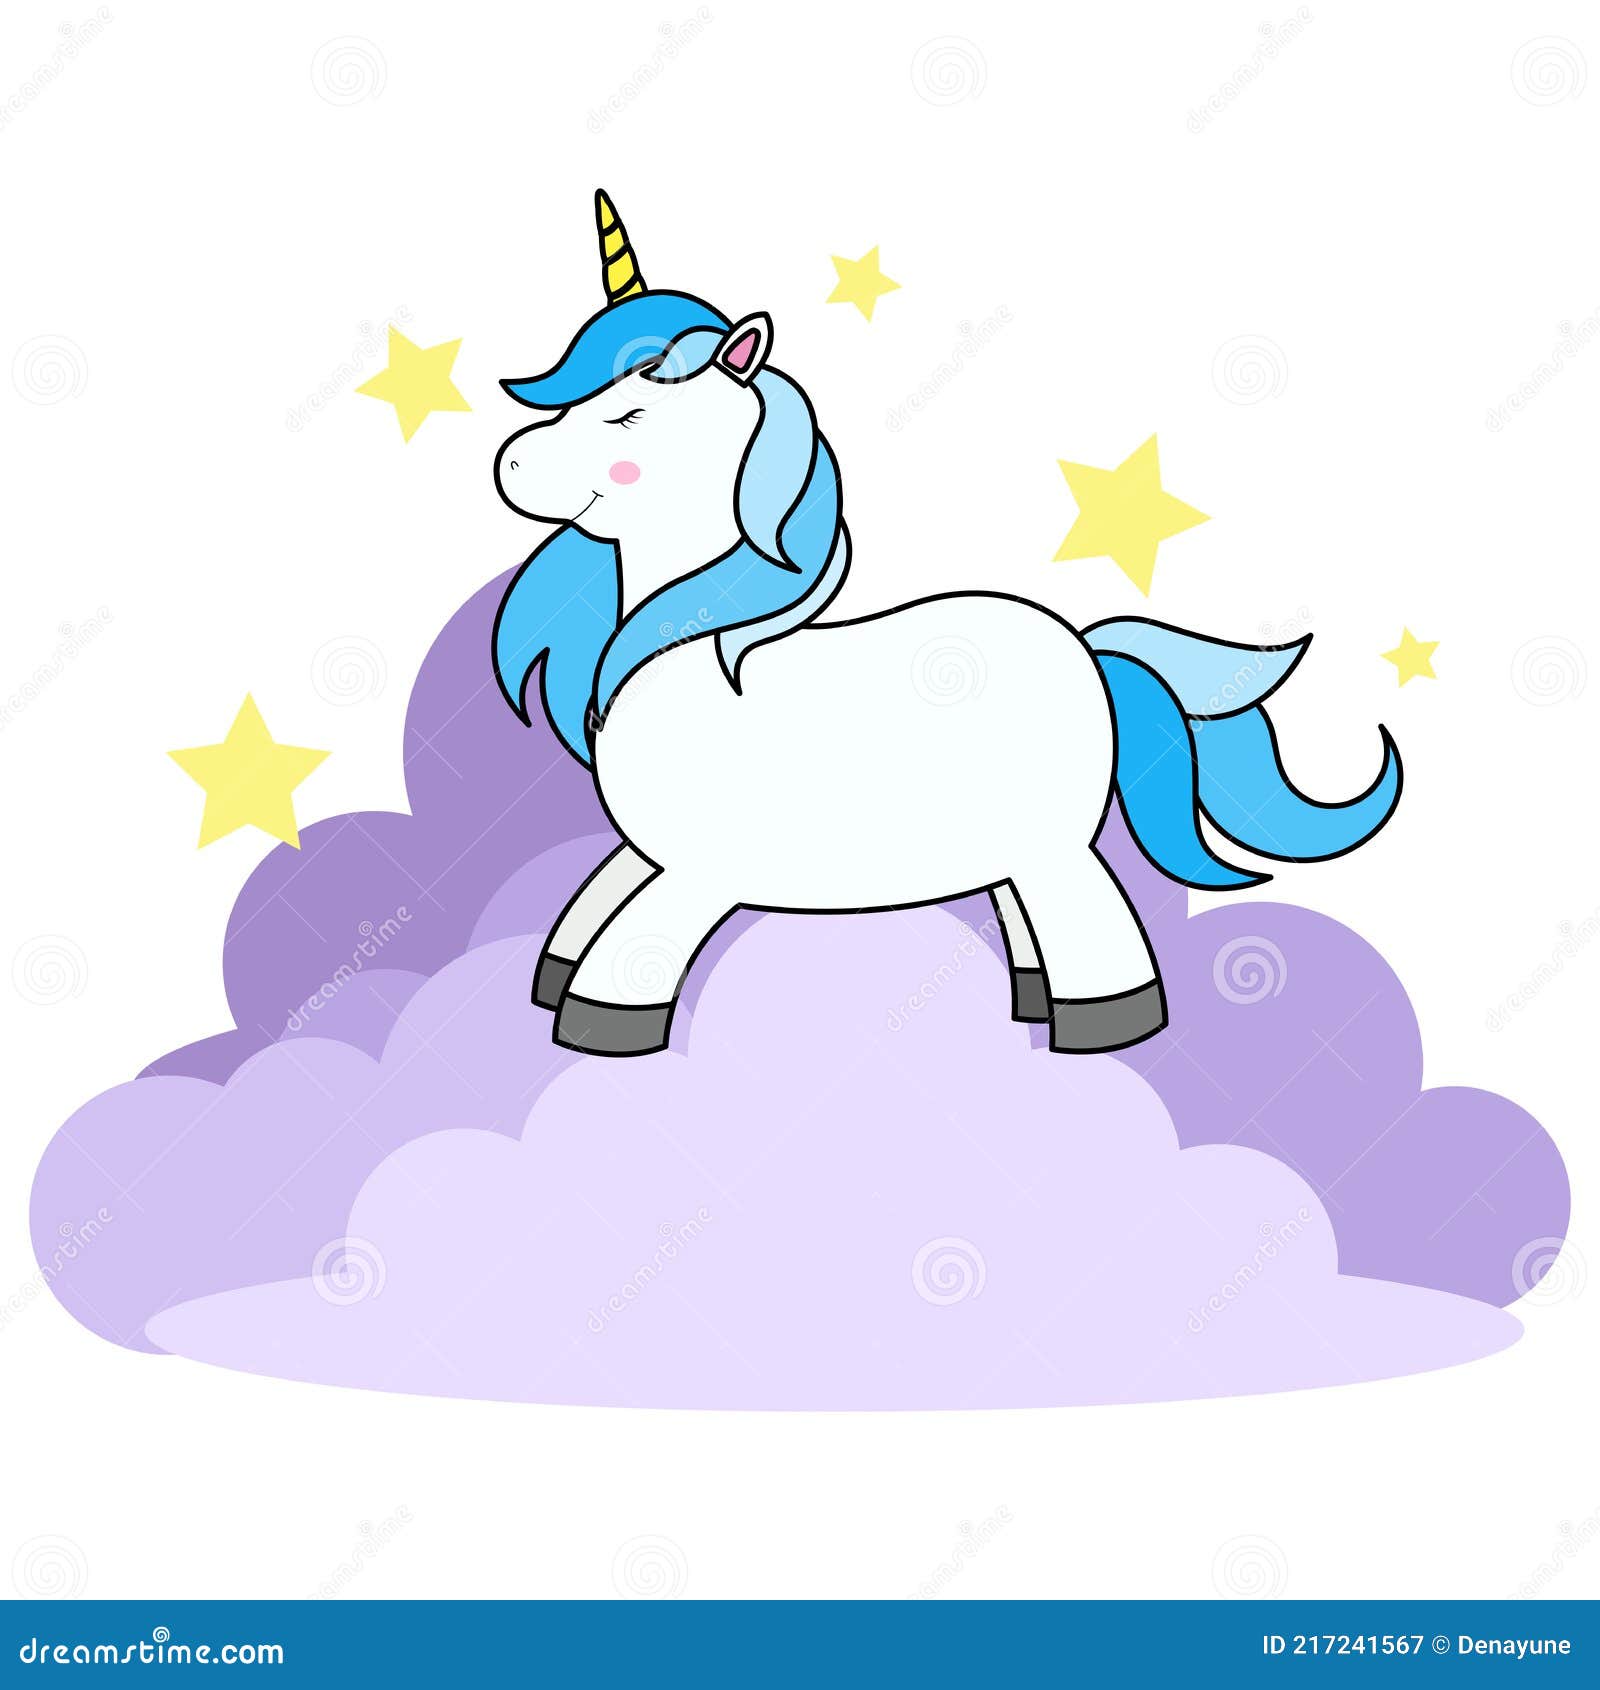 Papel De Parede Adesivo Infantil - Infantil Azul My Little Pony